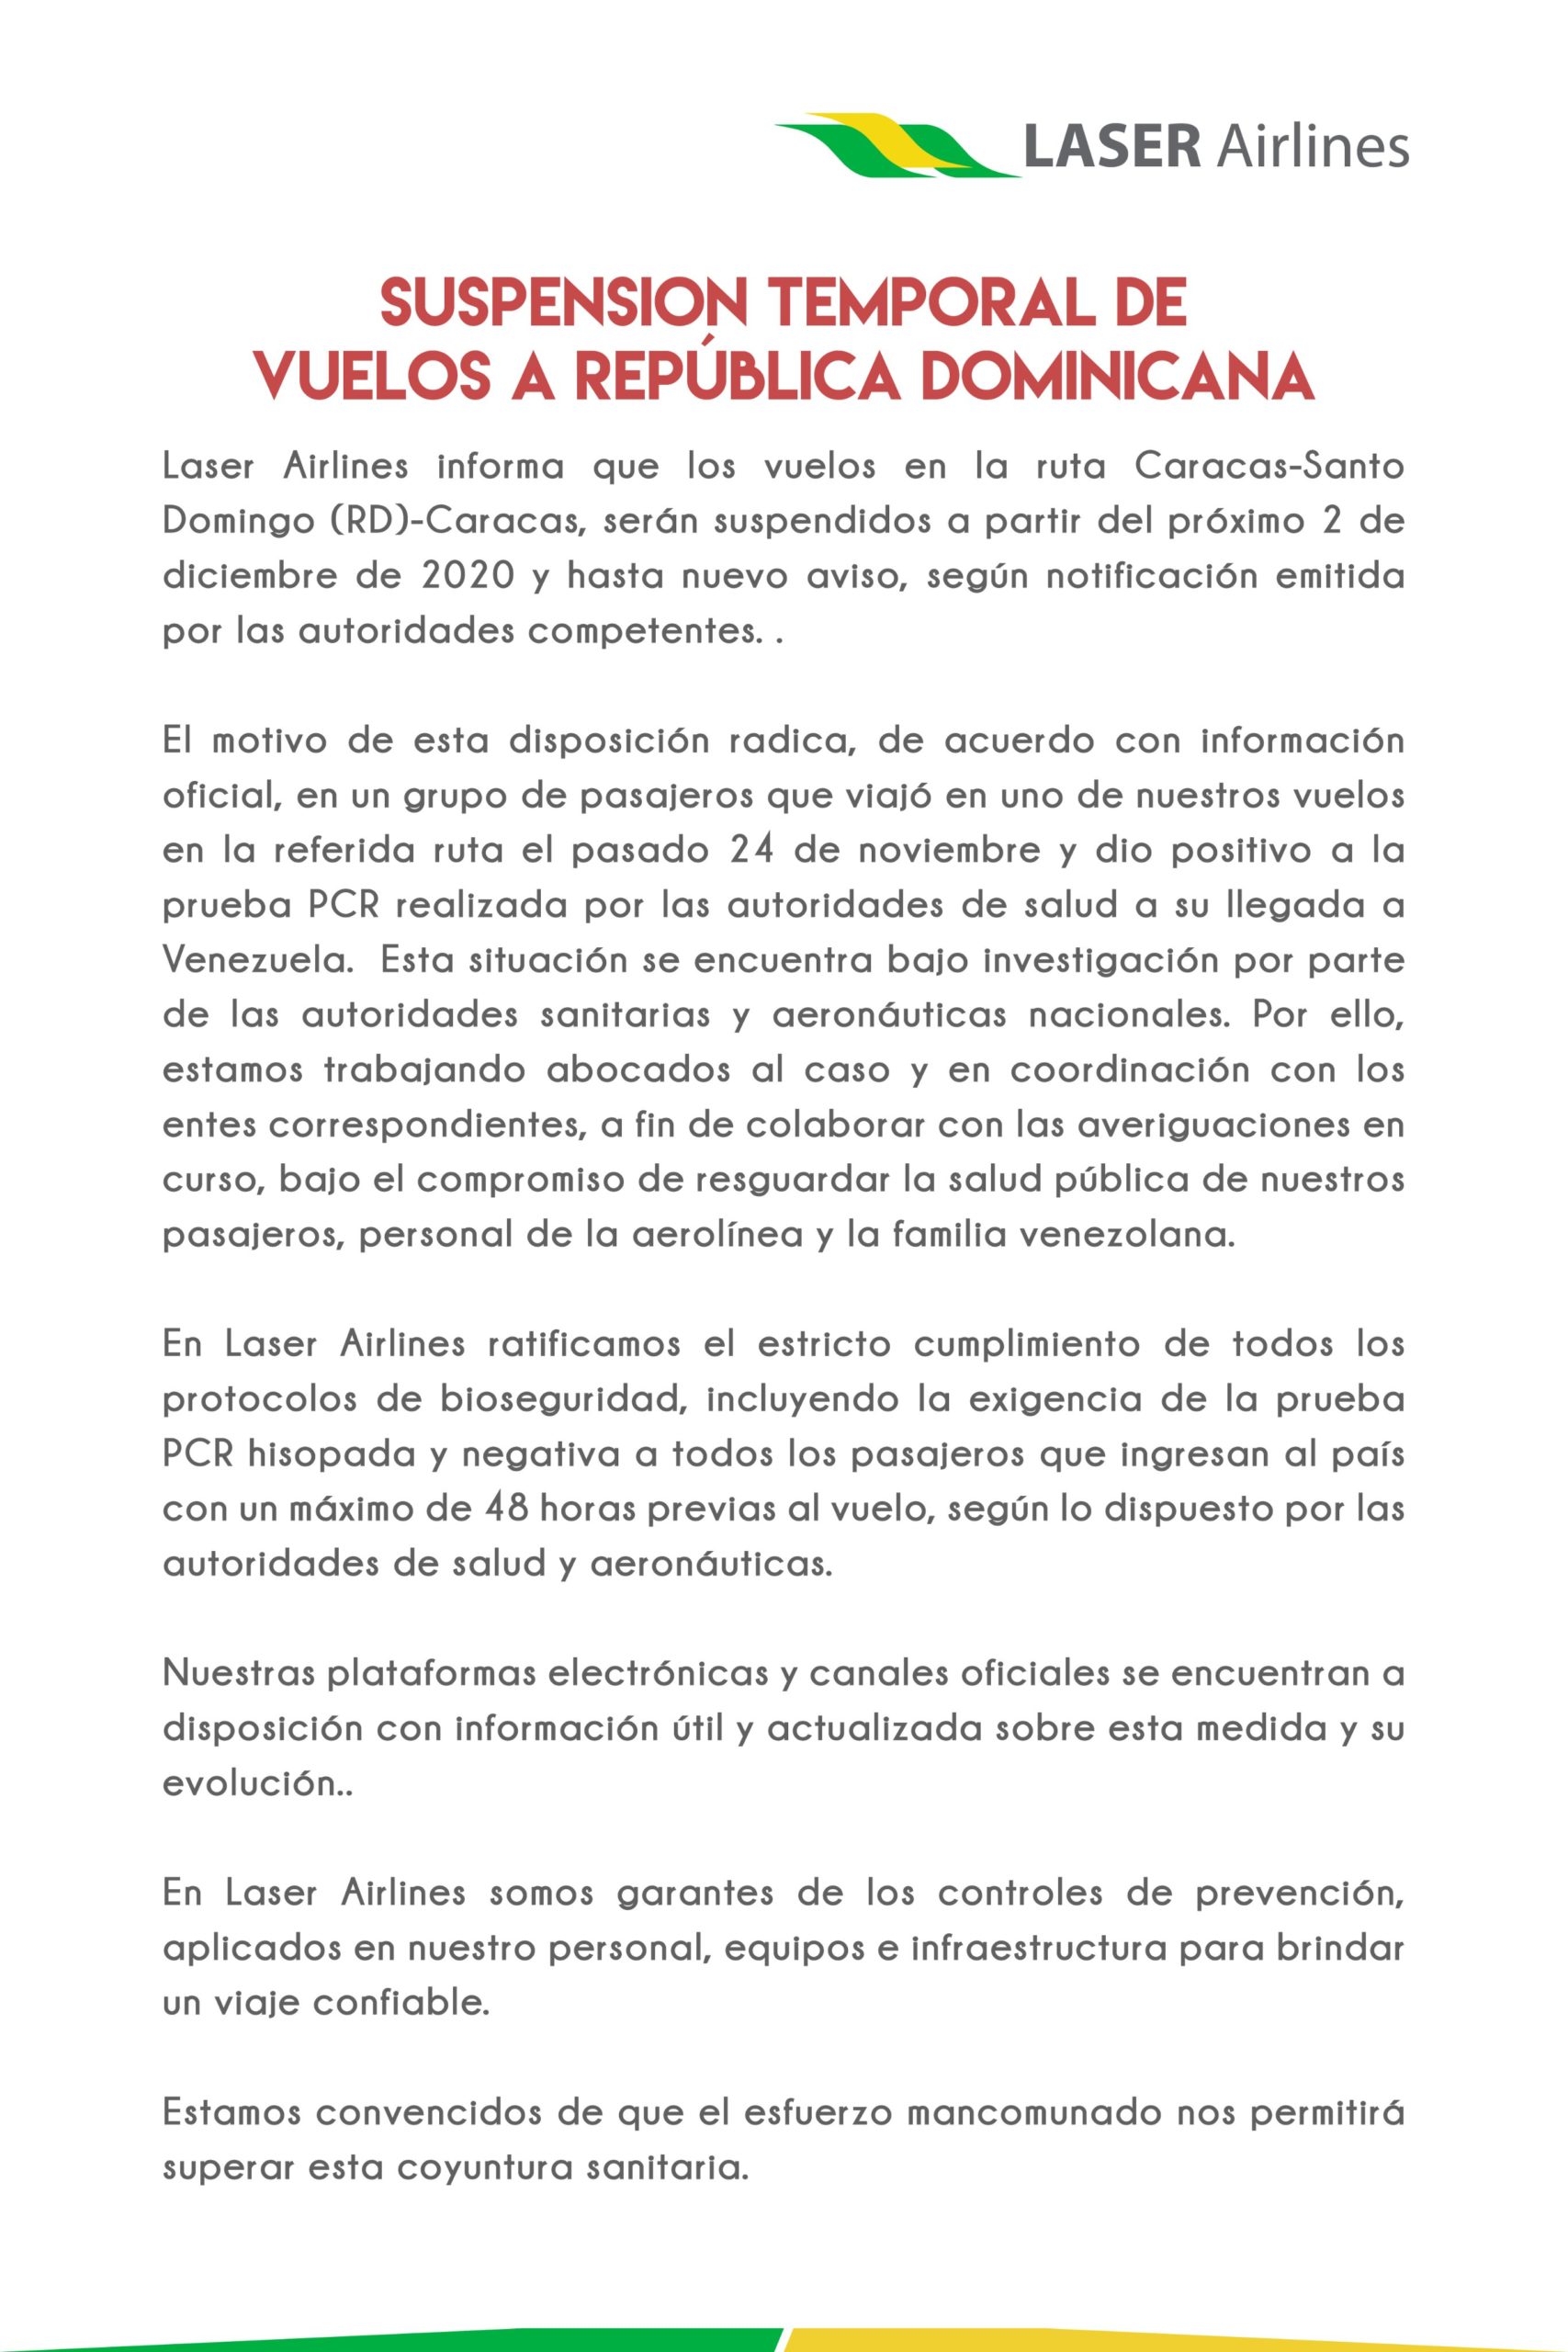 Suspendidos vuelos de Laser Airlines a República Dominicana hasta nuevo aviso